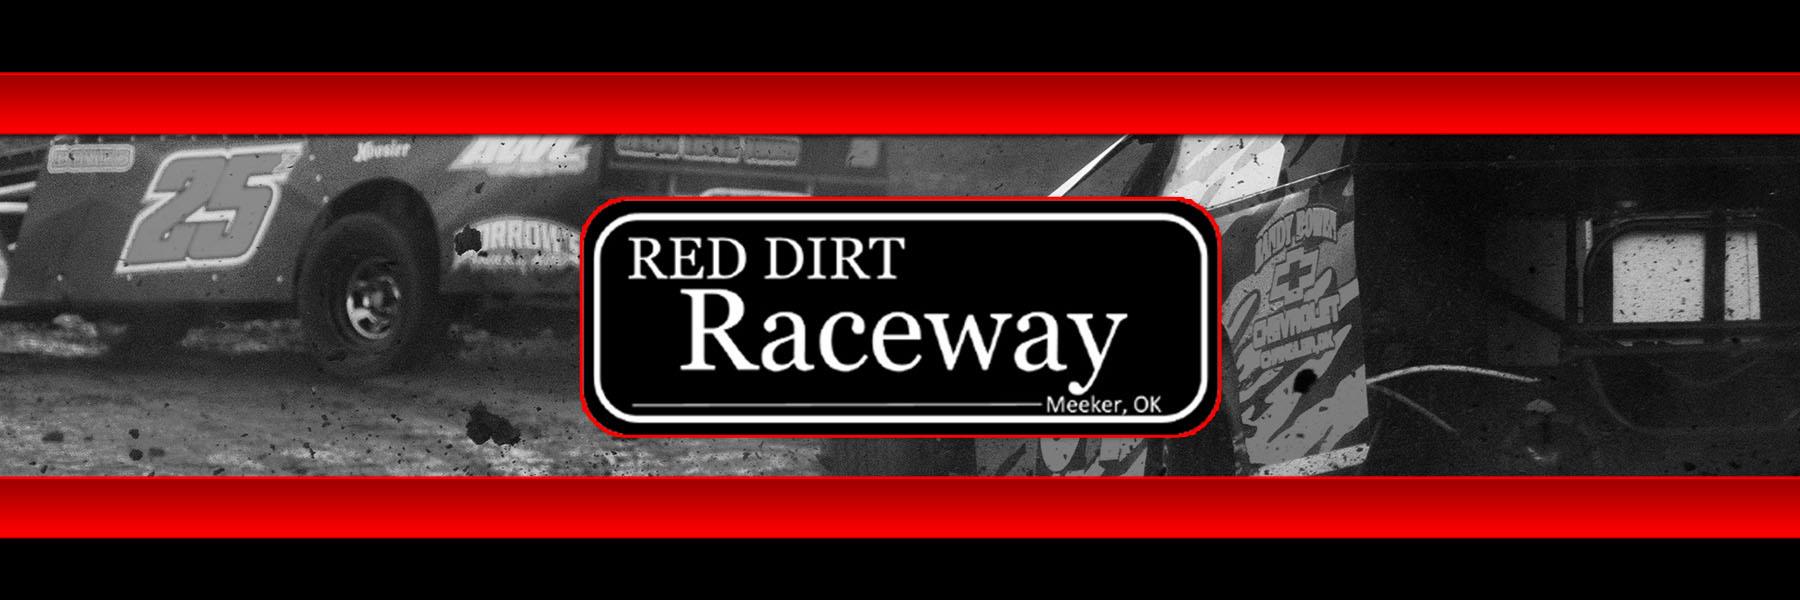 10/16/2021 - Red Dirt Raceway